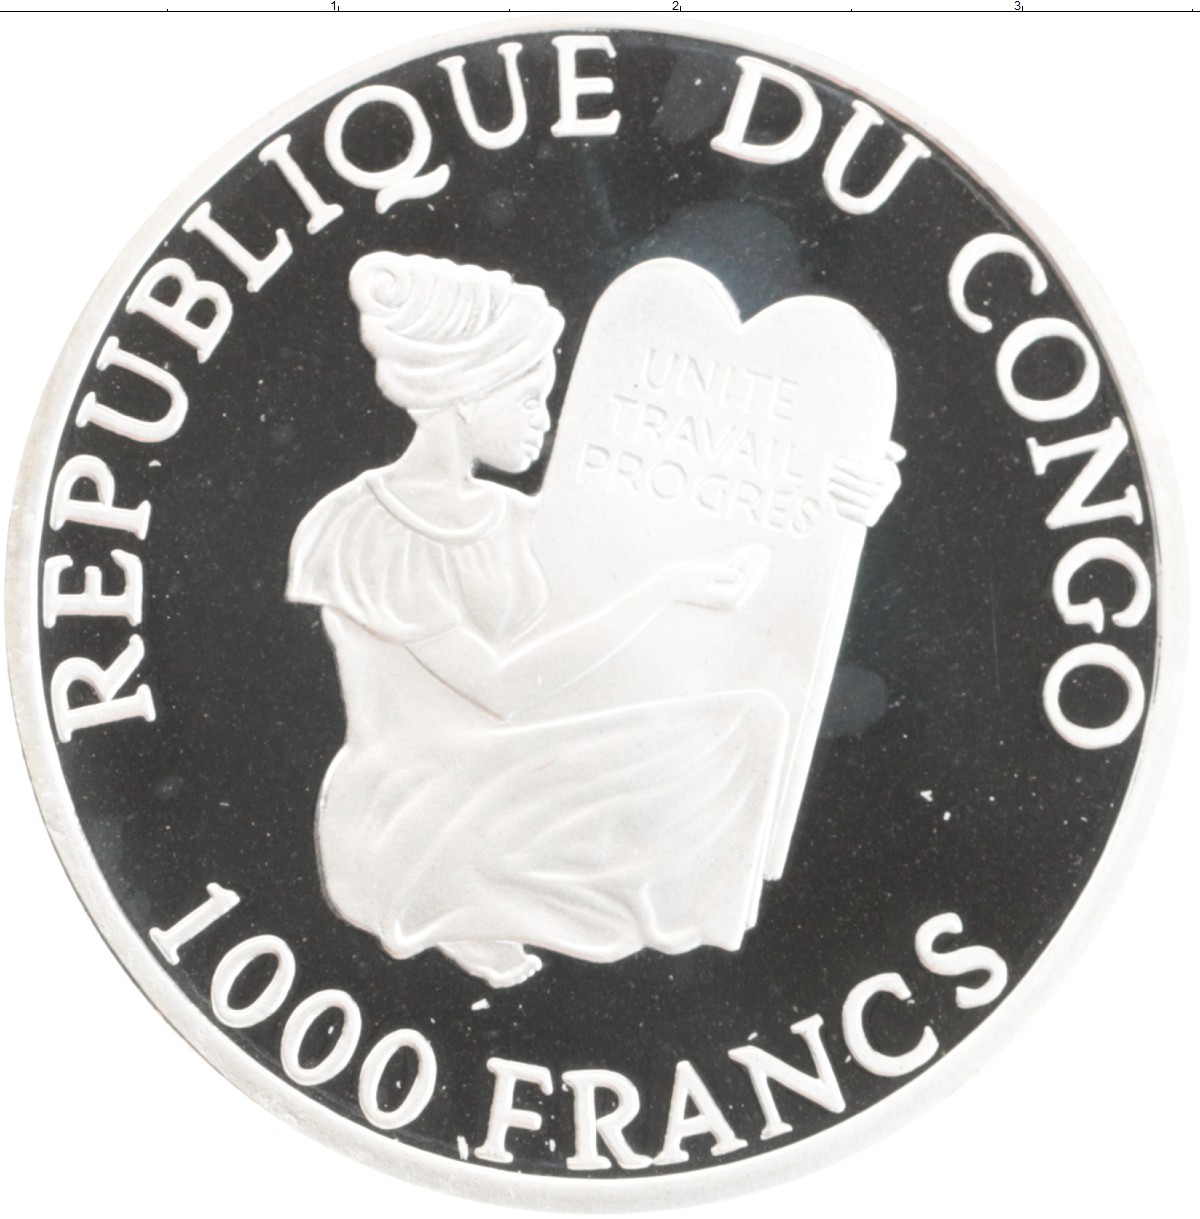 1000 франков в рублях. Конго 1000 франков 2001. Того 1000 франков 2001 парусник. Монета Конго в темноте.